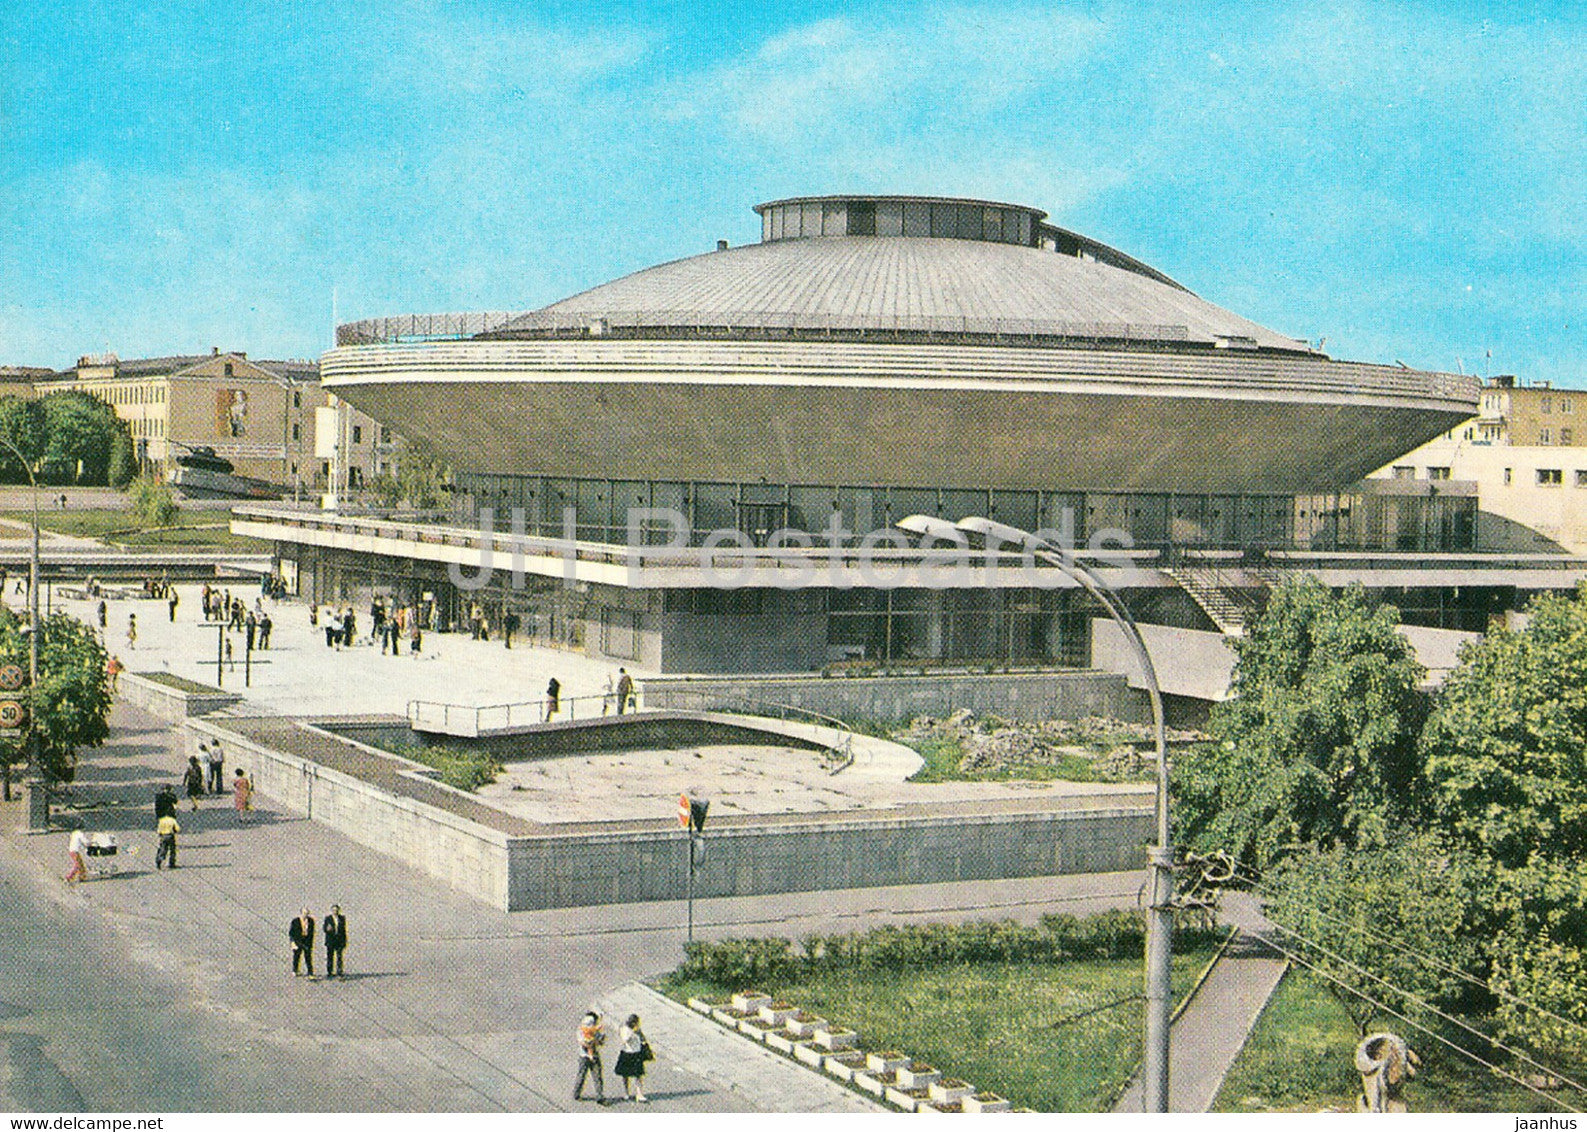 Gomel - circus - postal stationery - 1979 - Belarus USSR - unused - JH Postcards